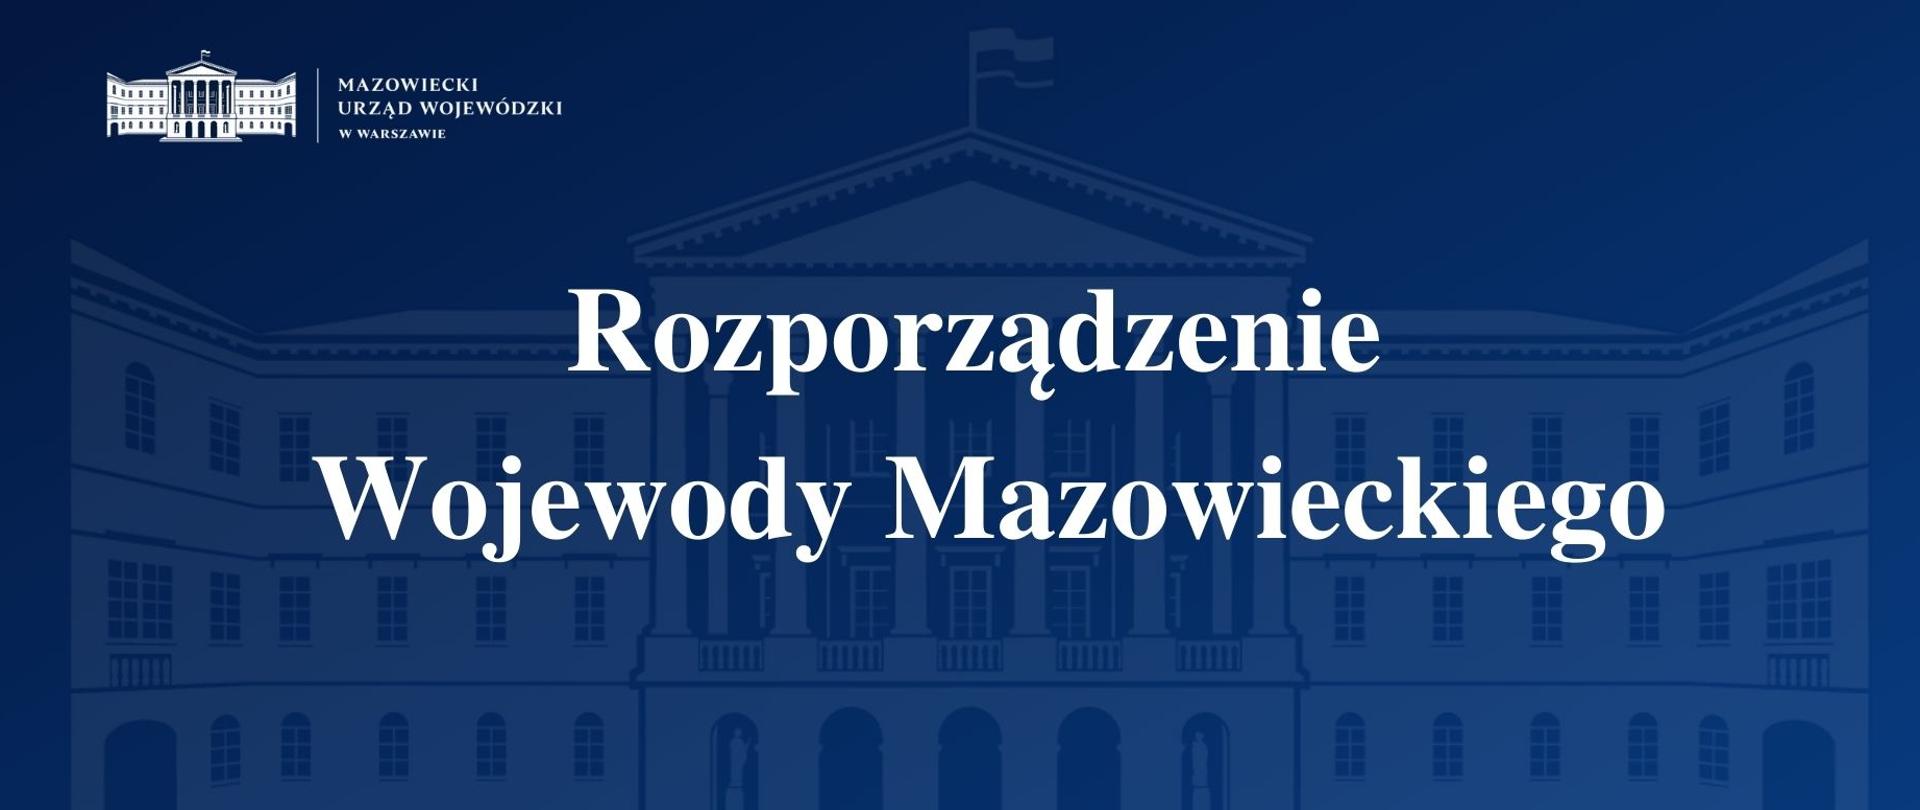 Grafika przedstawia granatową planszę z logo Mazowieckiego Urzędu Wojewódzkiego w Warszawie i napisem "Rozporządzenie Wojewody Mazowieckiego".